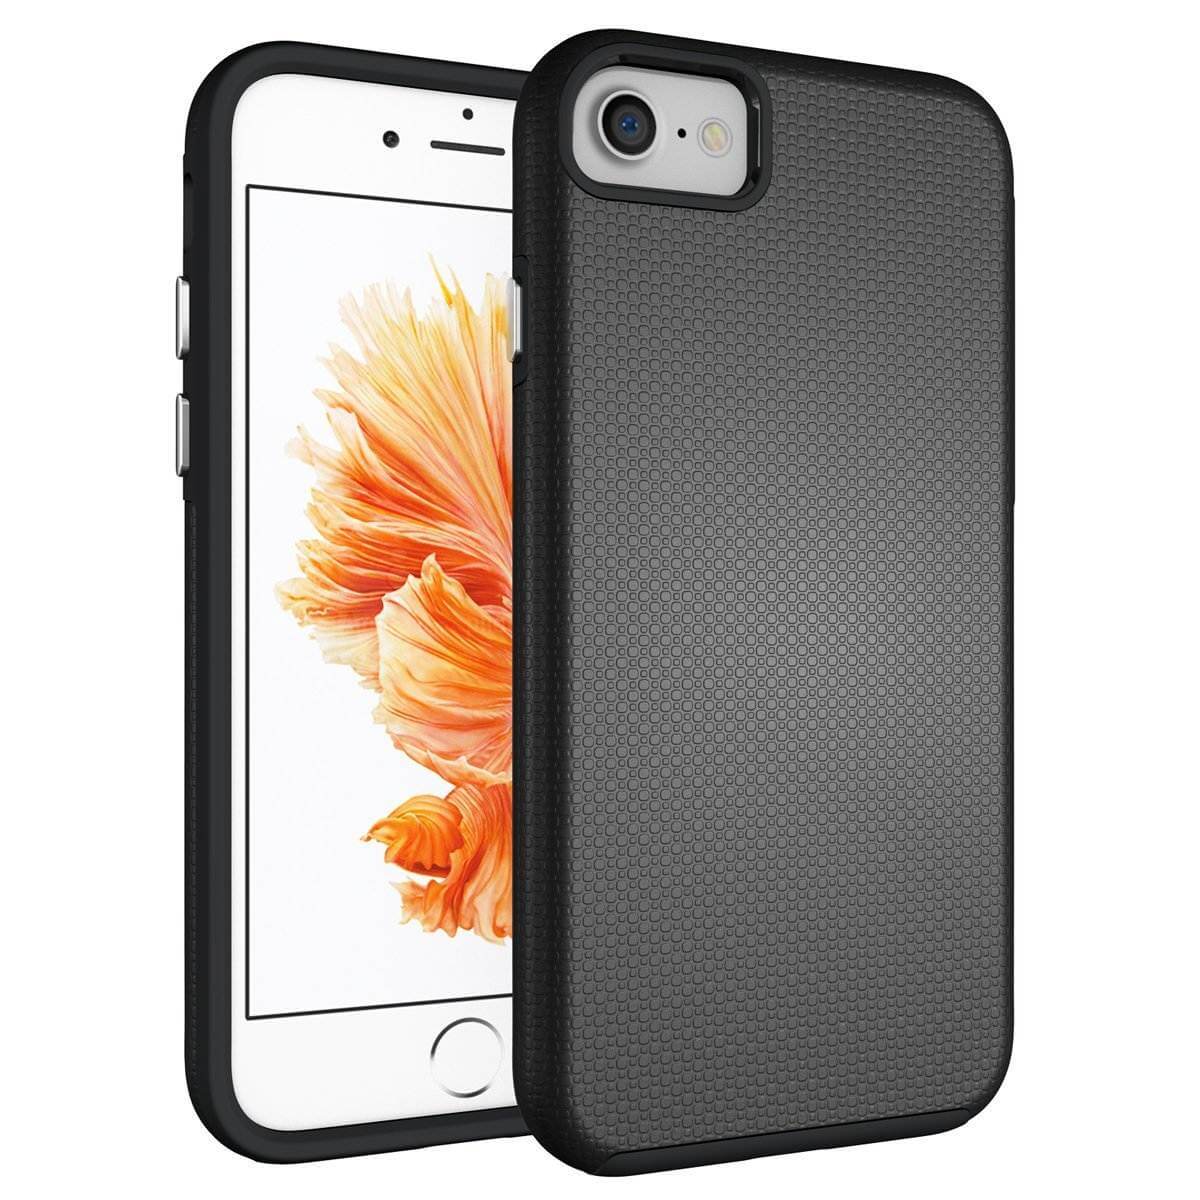 Draaien Automatisch pop SDTEK iPhone 6s/6 hoesje, iPhone 6s/6 hybride schokbestendige hoes ( siliconen en hard plastic) [zwart]